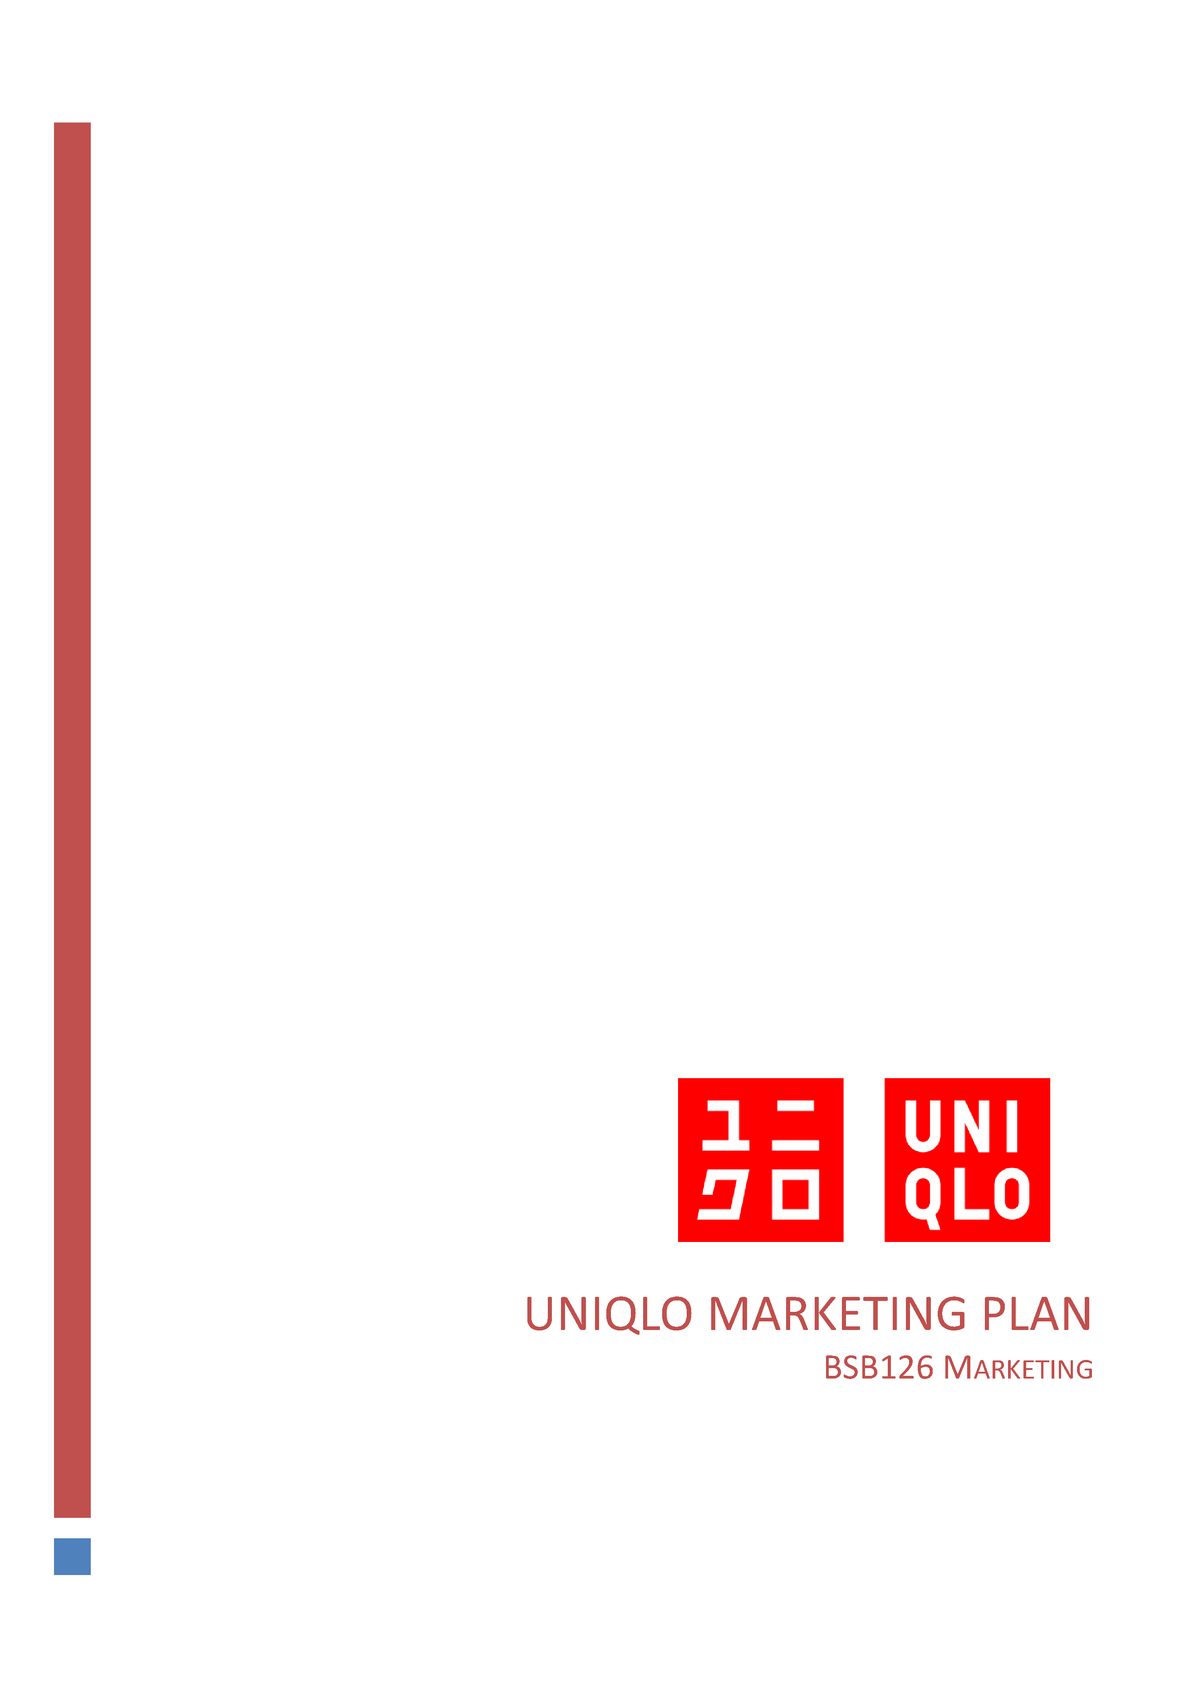 UNIQLO marketing strategy